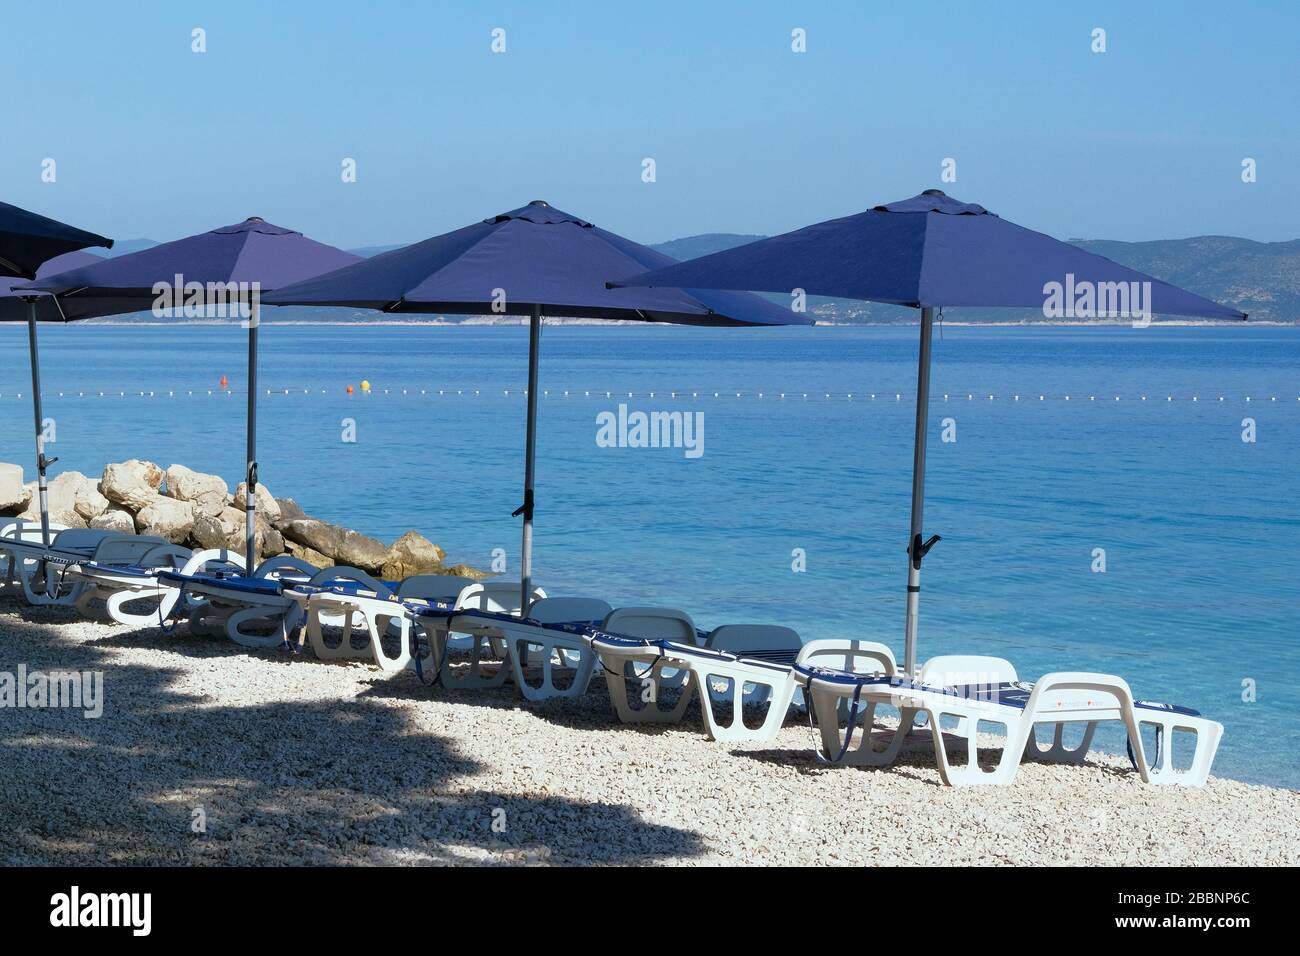 Blaue Sonnenschirme und Chaise für Entspannung und Komfort am Strand. Fröhlicher Sommerurlaub und Tourismuskonzept. Kostenpflichtiger Service an Stränden mit Wasserlandschaft. Stockfoto